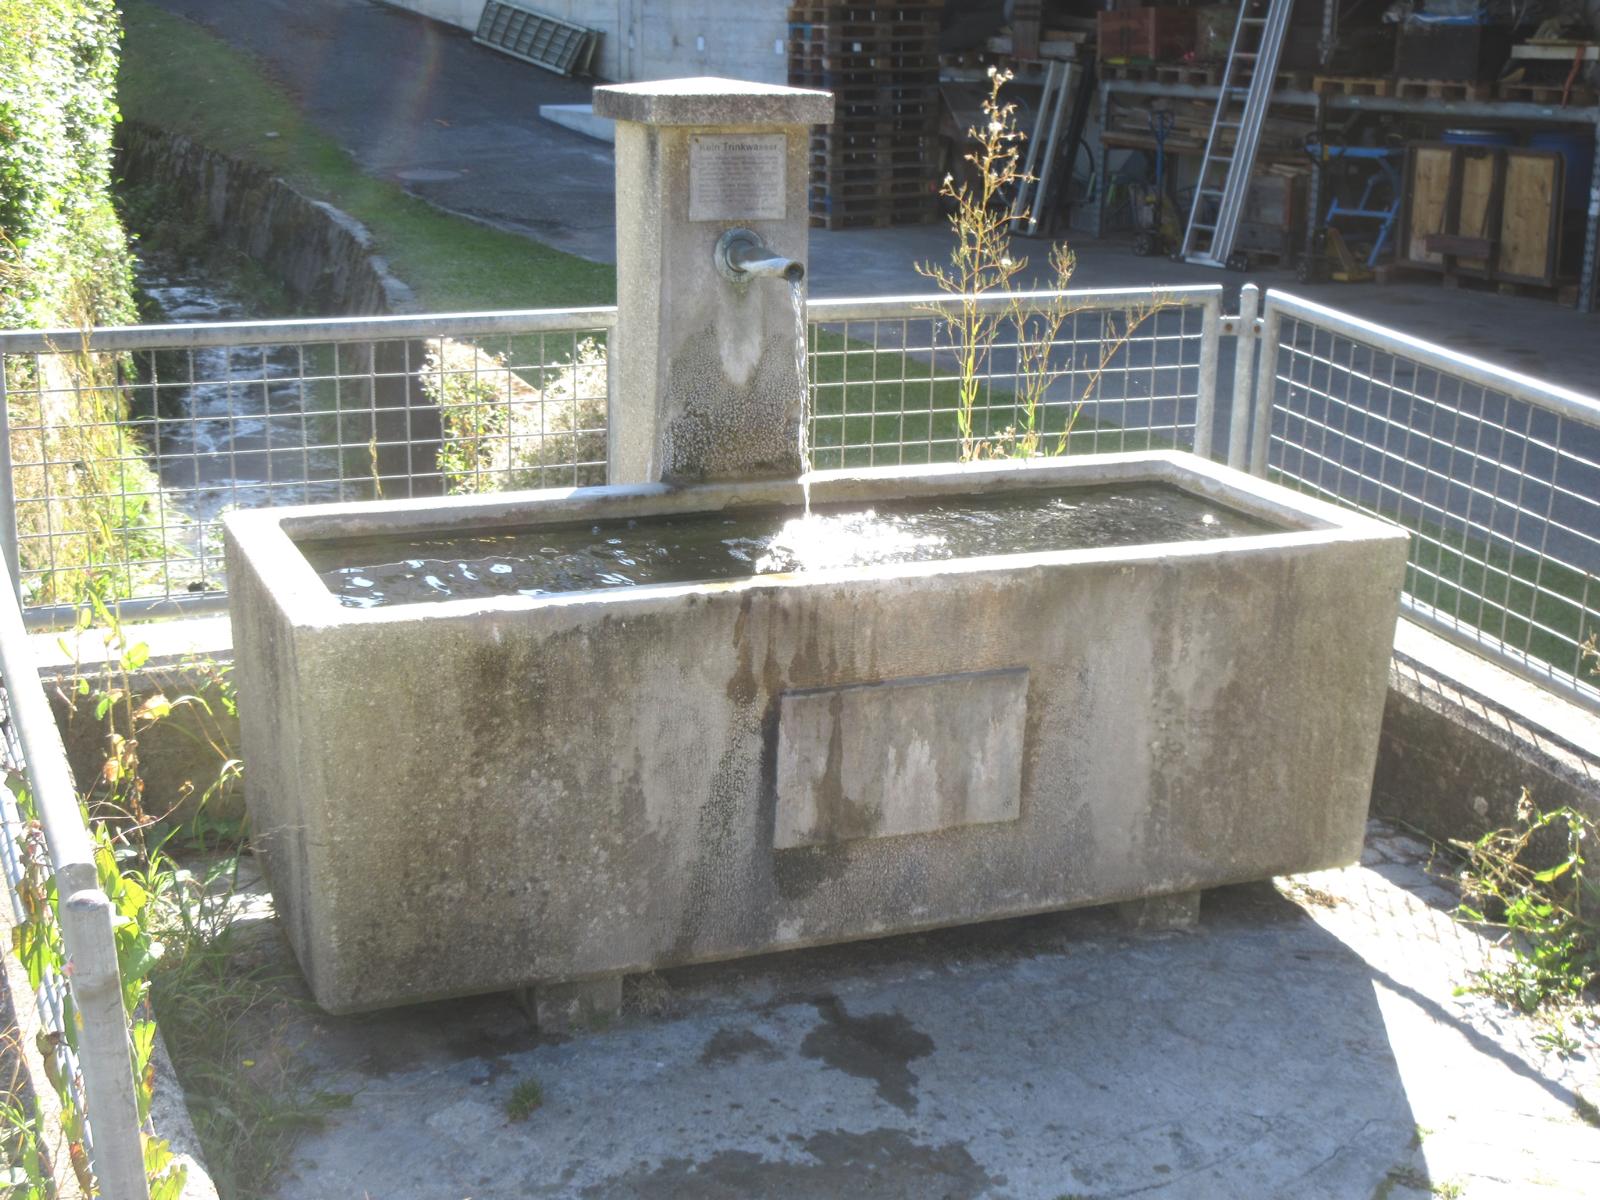 Bärenmättli *** o.J. *** Beton (1.7 x 0.7 m) *** Beton *** Ehemaliges Meltinger Mineralwasser speist heute die Dorfbrunnen.